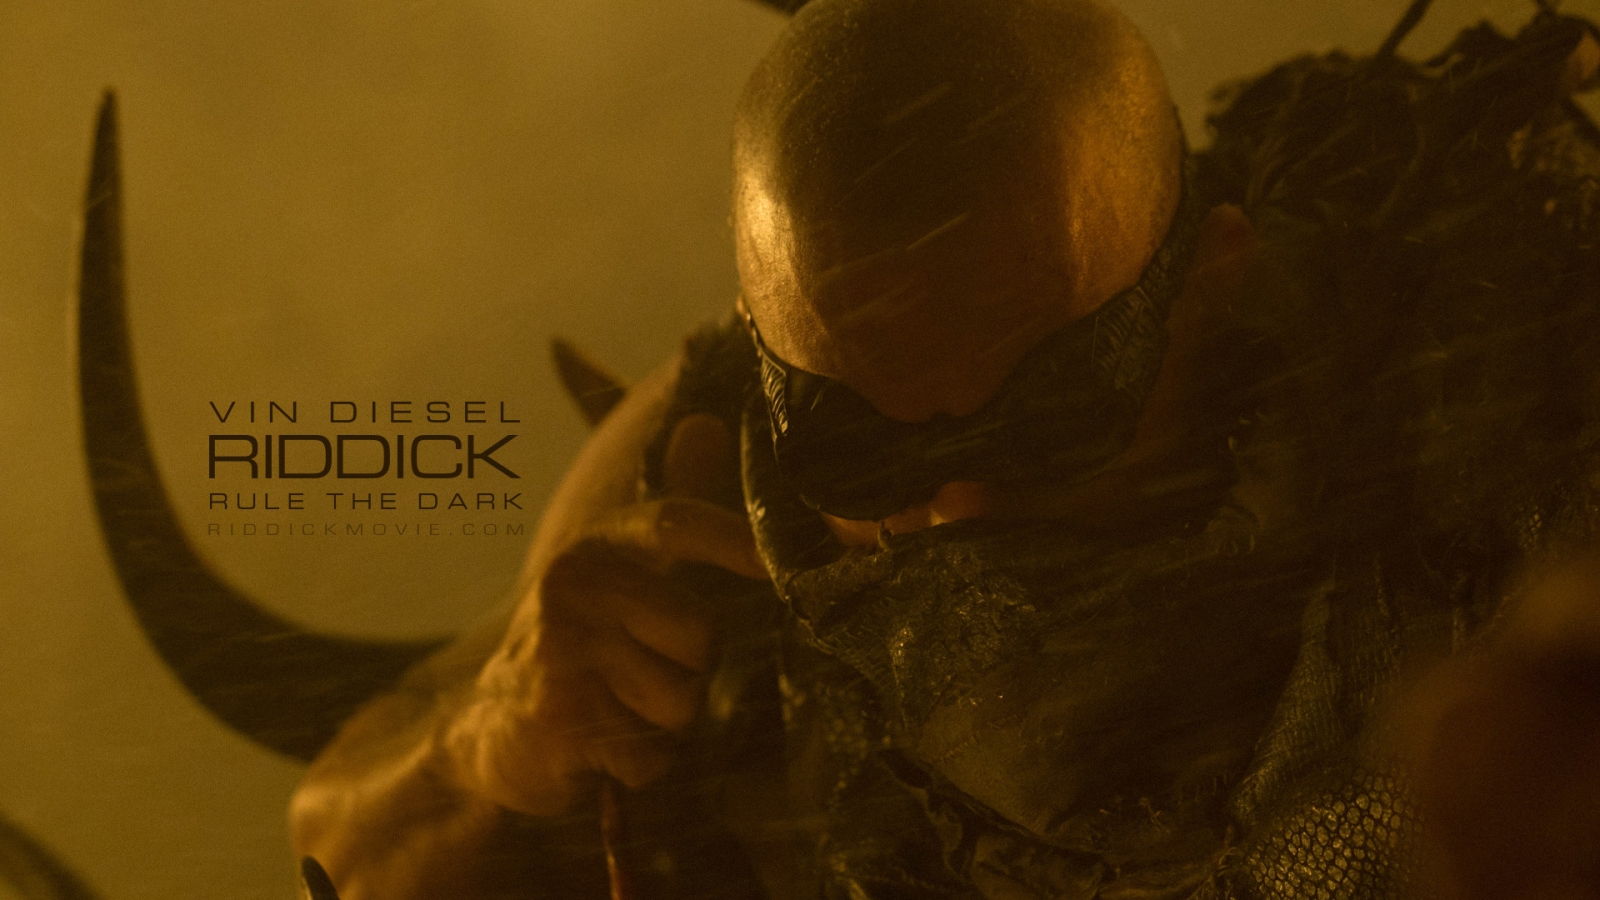 Vin Diesel Riddick for 1600 x 900 HDTV resolution